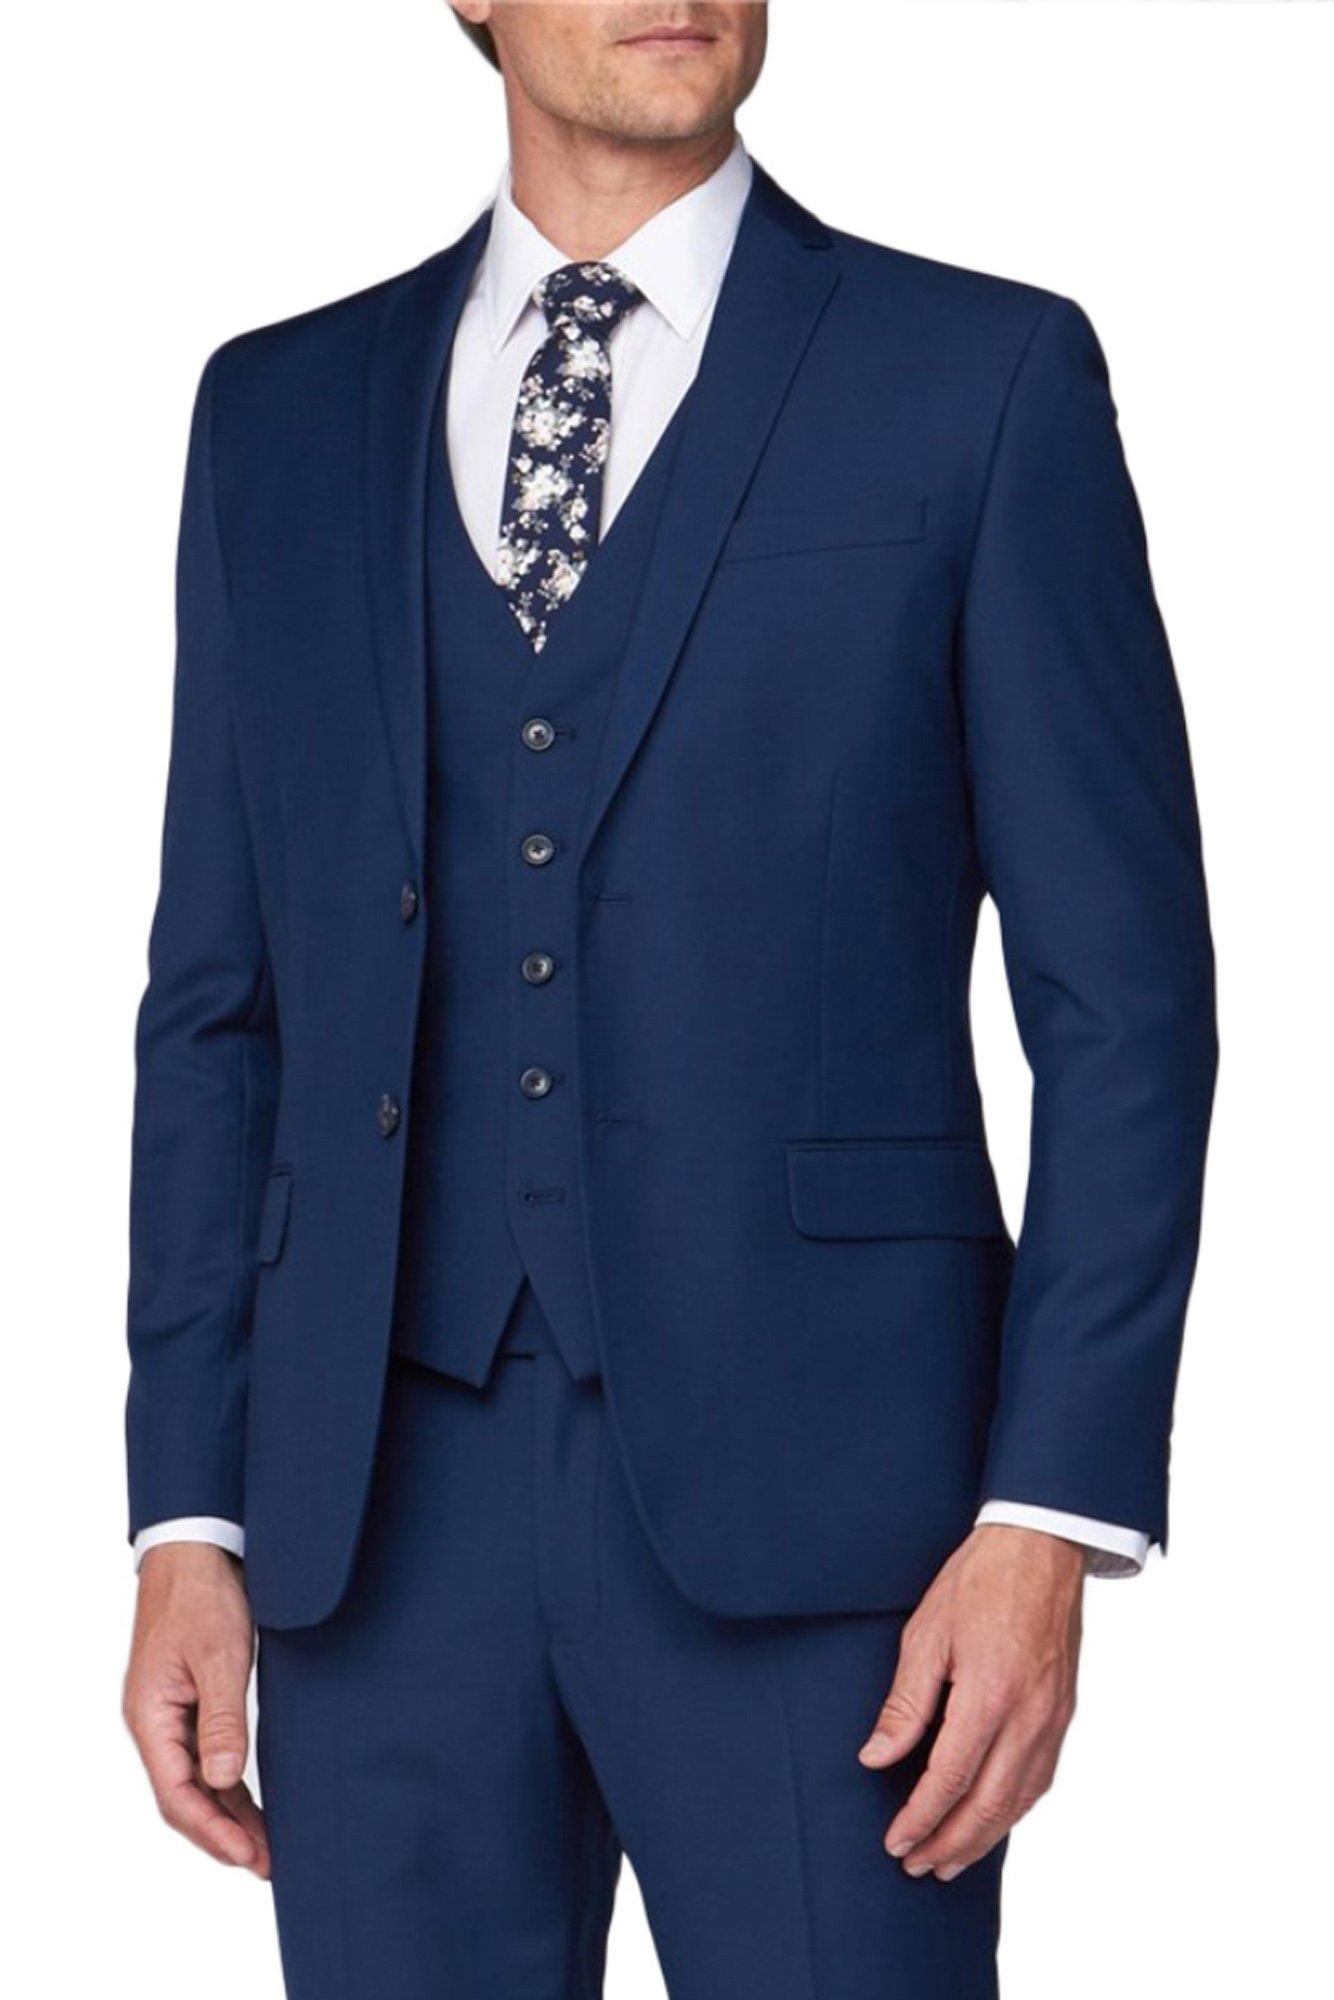 Ted Baker Panama Men's Blue Piece Slim Fit Suit, 54% OFF